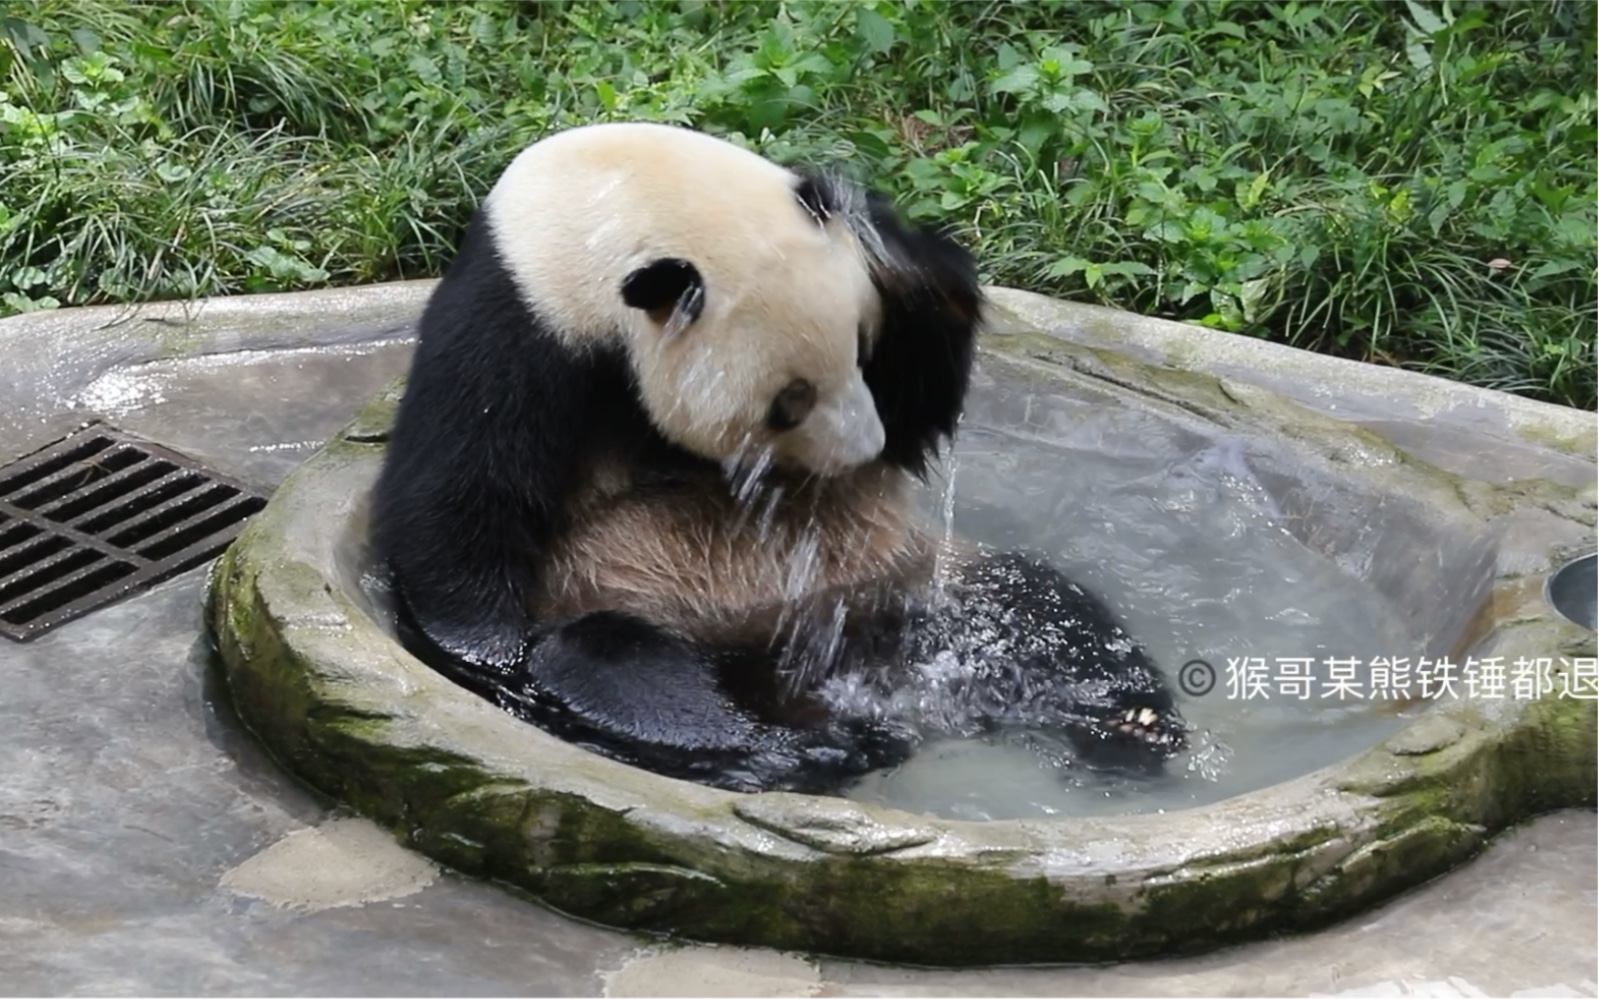 【大熊猫丁丁】210614重动,自己洗脸洗头的丁丁猫!